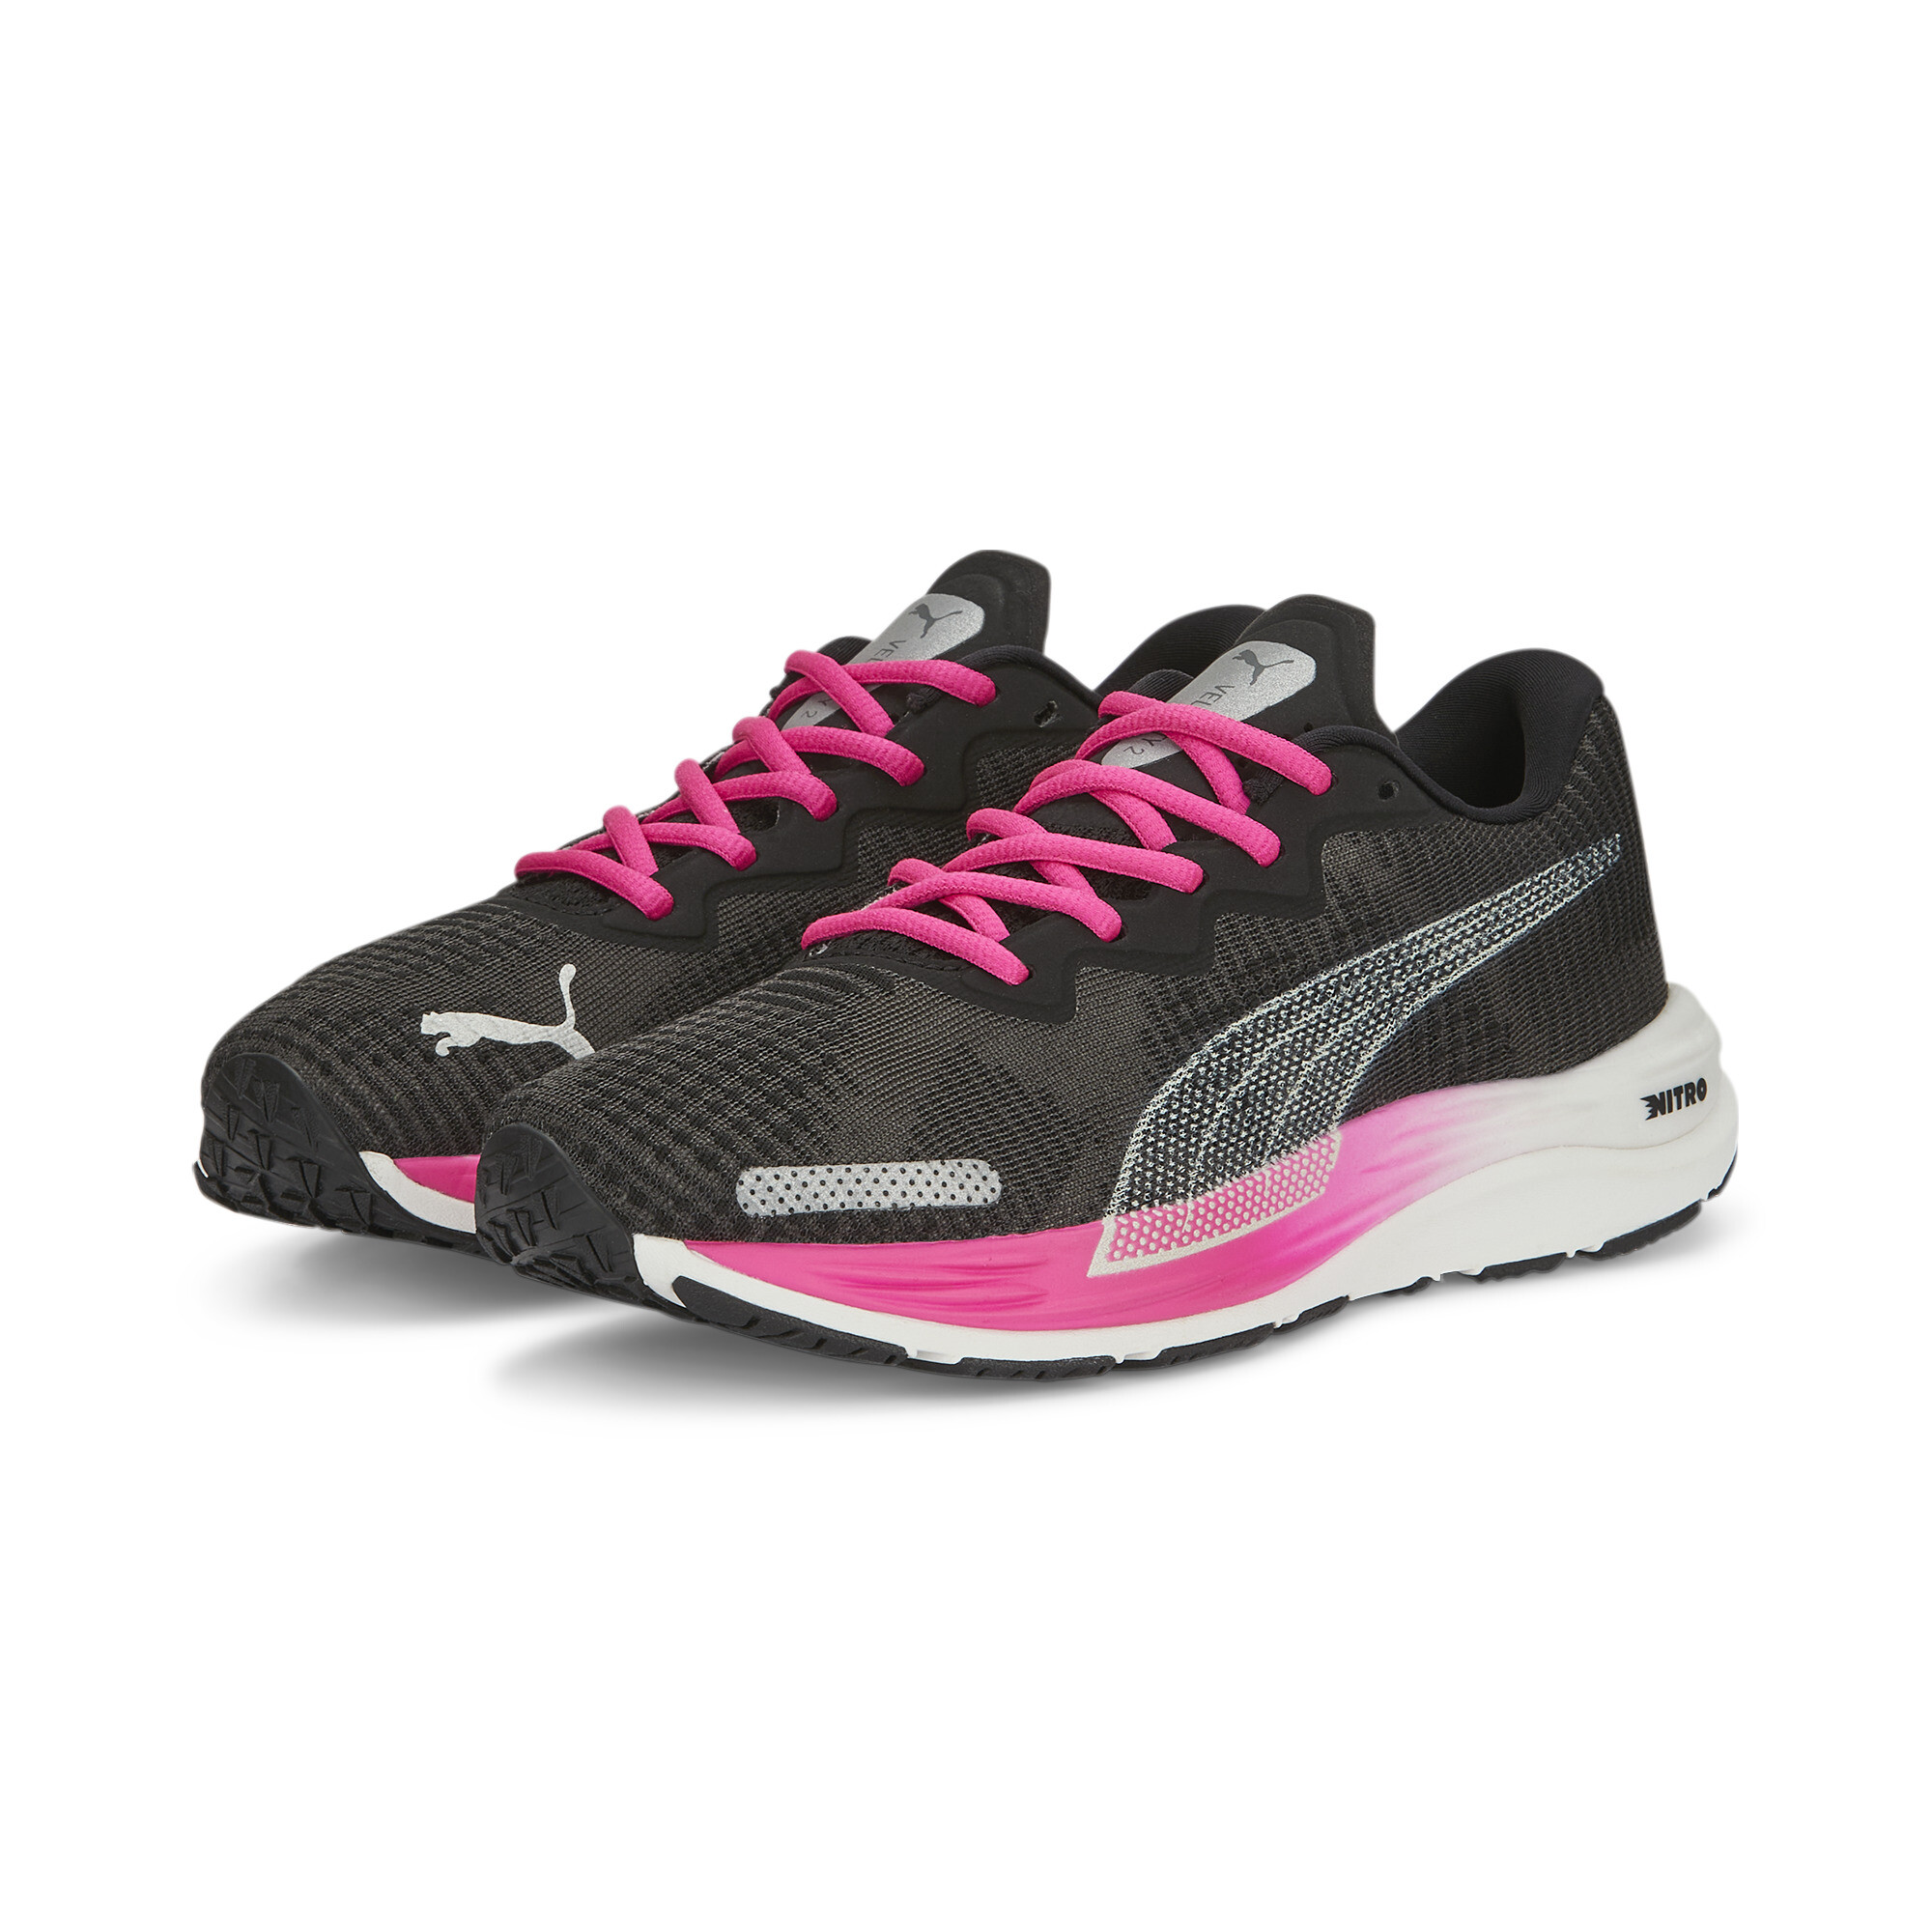 Women's PUMA Velocity NITRO 2 Fade Running Shoes Women In Black, Size EU 40.5